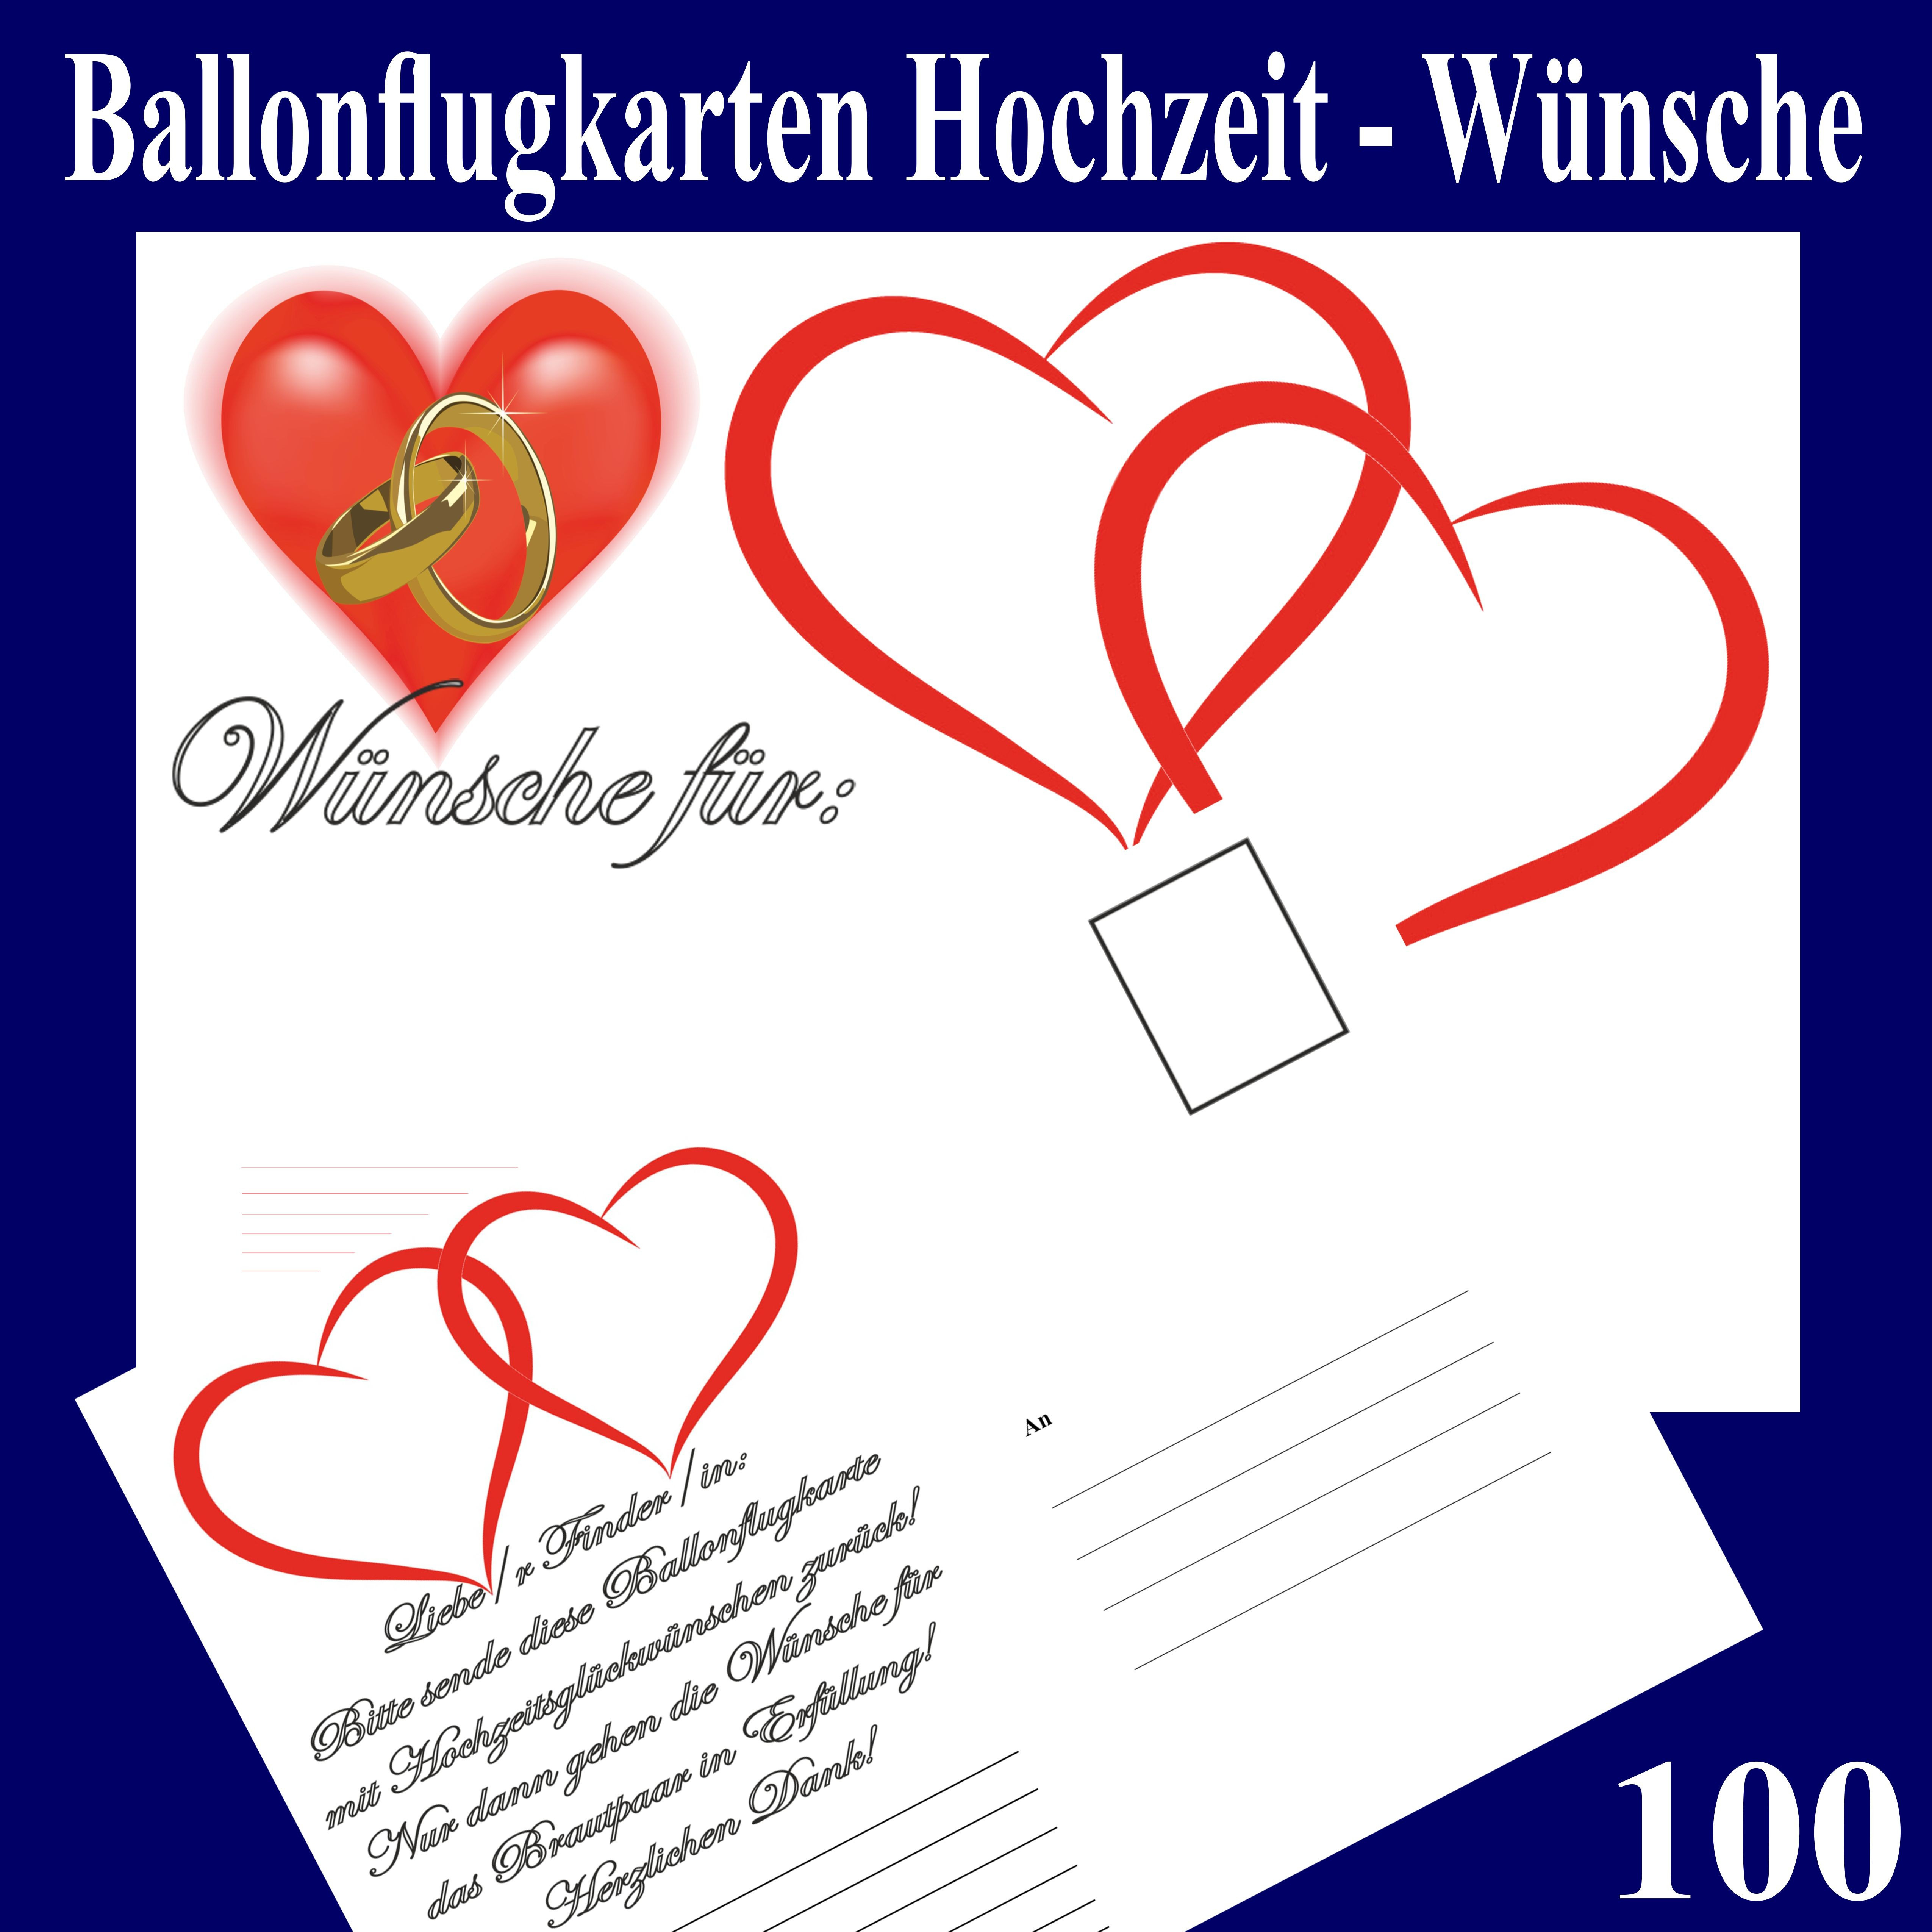 Hochzeit Luftballons Steigen Lassen
 Ballonflugkarten Hochzeit Wünsche für das Brautpaar 100